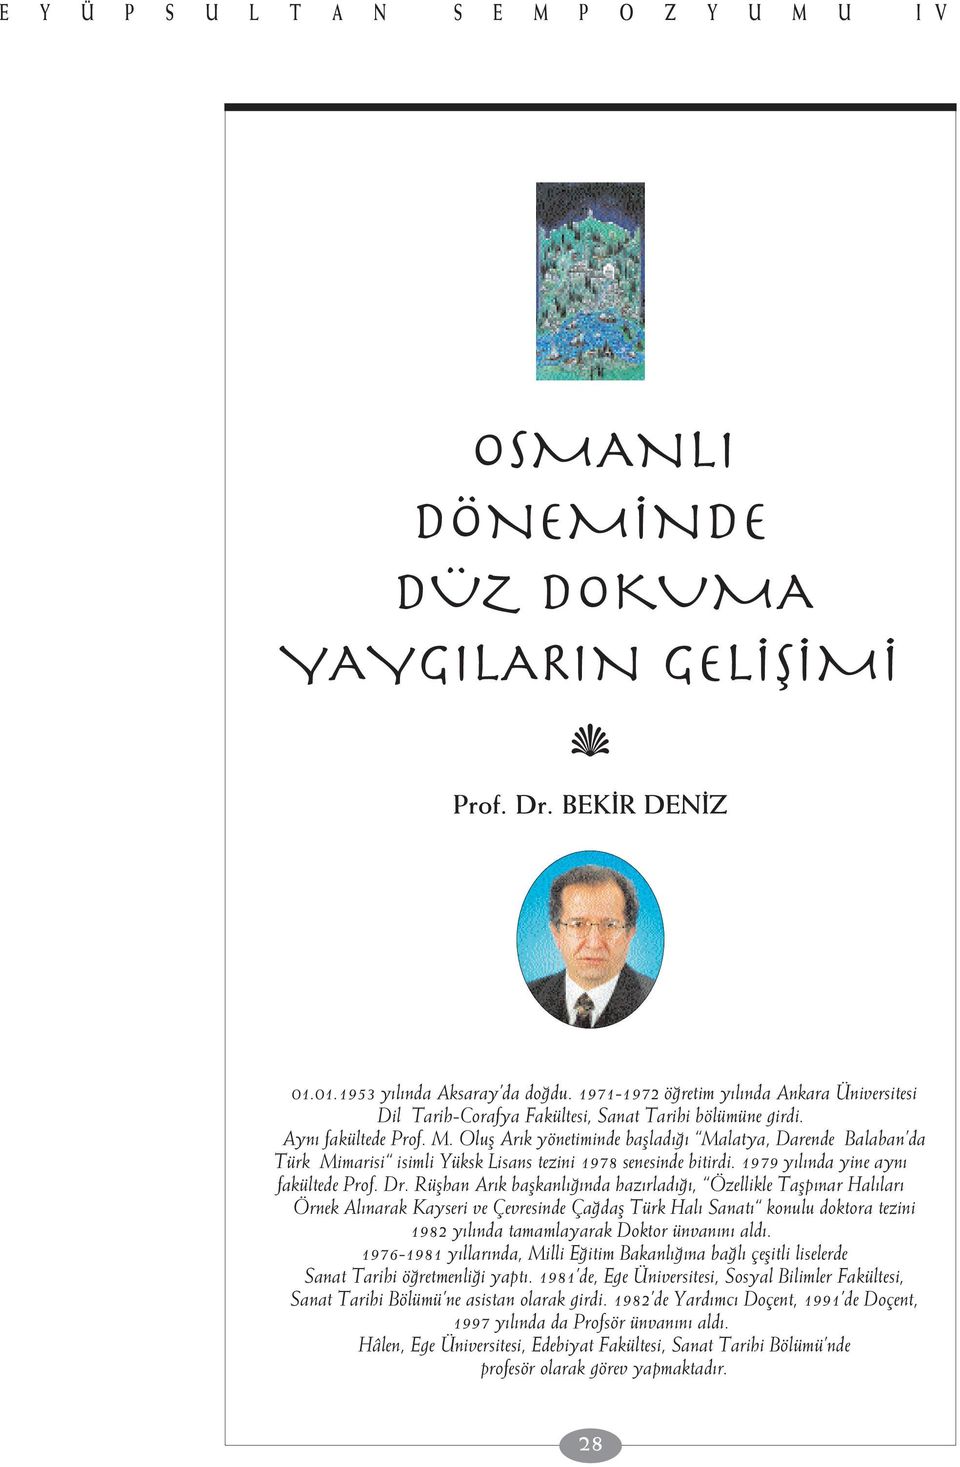 Olufl Ar k yönetiminde bafllad Malatya, Darende Balaban da Türk Mimarisi isimli Yüksk Lisans tezini 1978 senesinde bitirdi. 1979 y l nda yine ayn fakültede Prof. Dr.